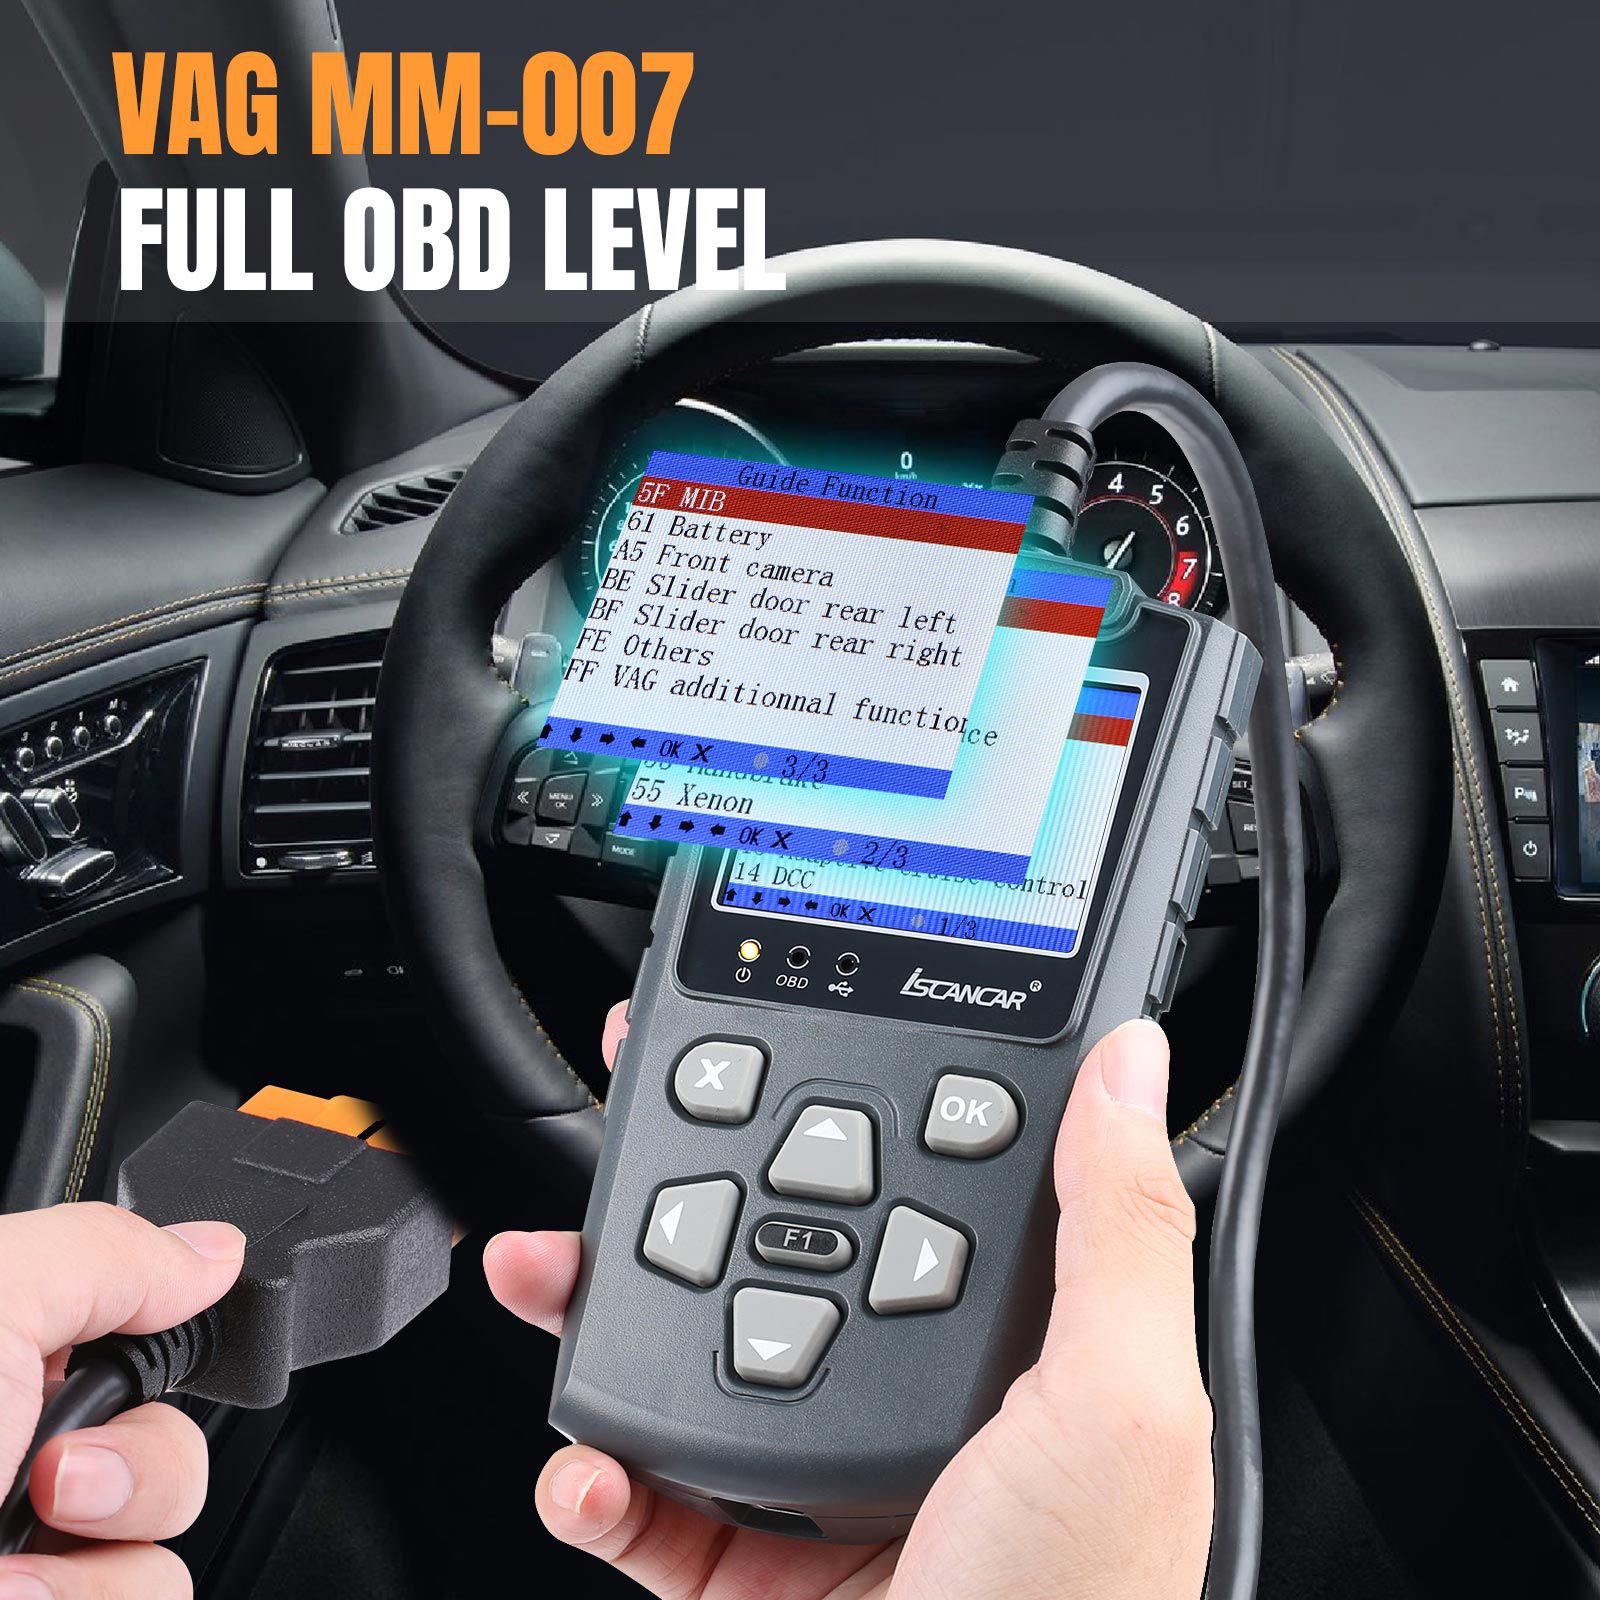 La herramienta de diagnóstico y mantenimiento xhorse iscancar VAG - mm007 admite actualizaciones fuera de línea de las correcciones de kilometraje de volkswagen, audi, skoda, Seat y MQB